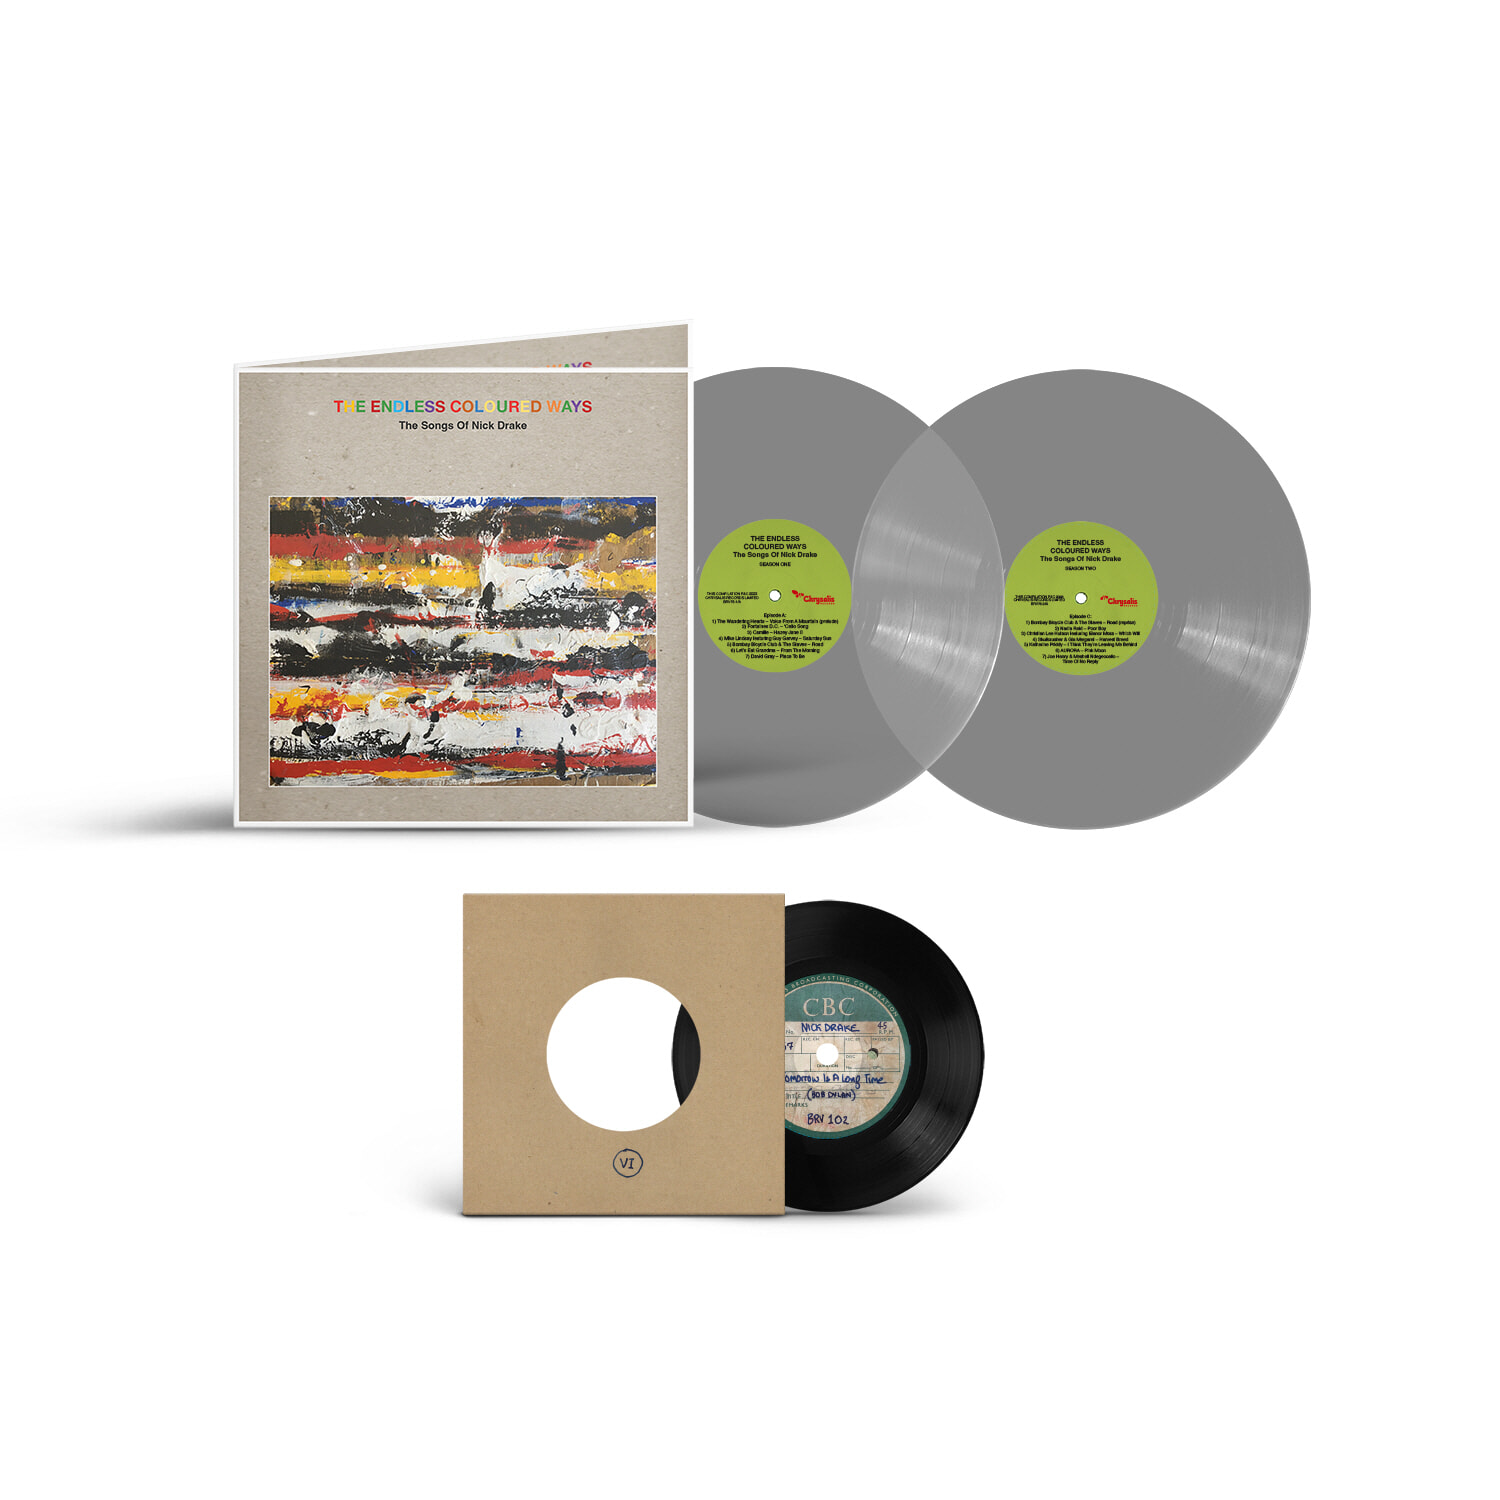 닉 드레이크 컴필레이션 앨범 (The Endless Coloured Ways: The Songs of Nick Drake) [7인치 Vinyl + 그레이 컬러 2LP]